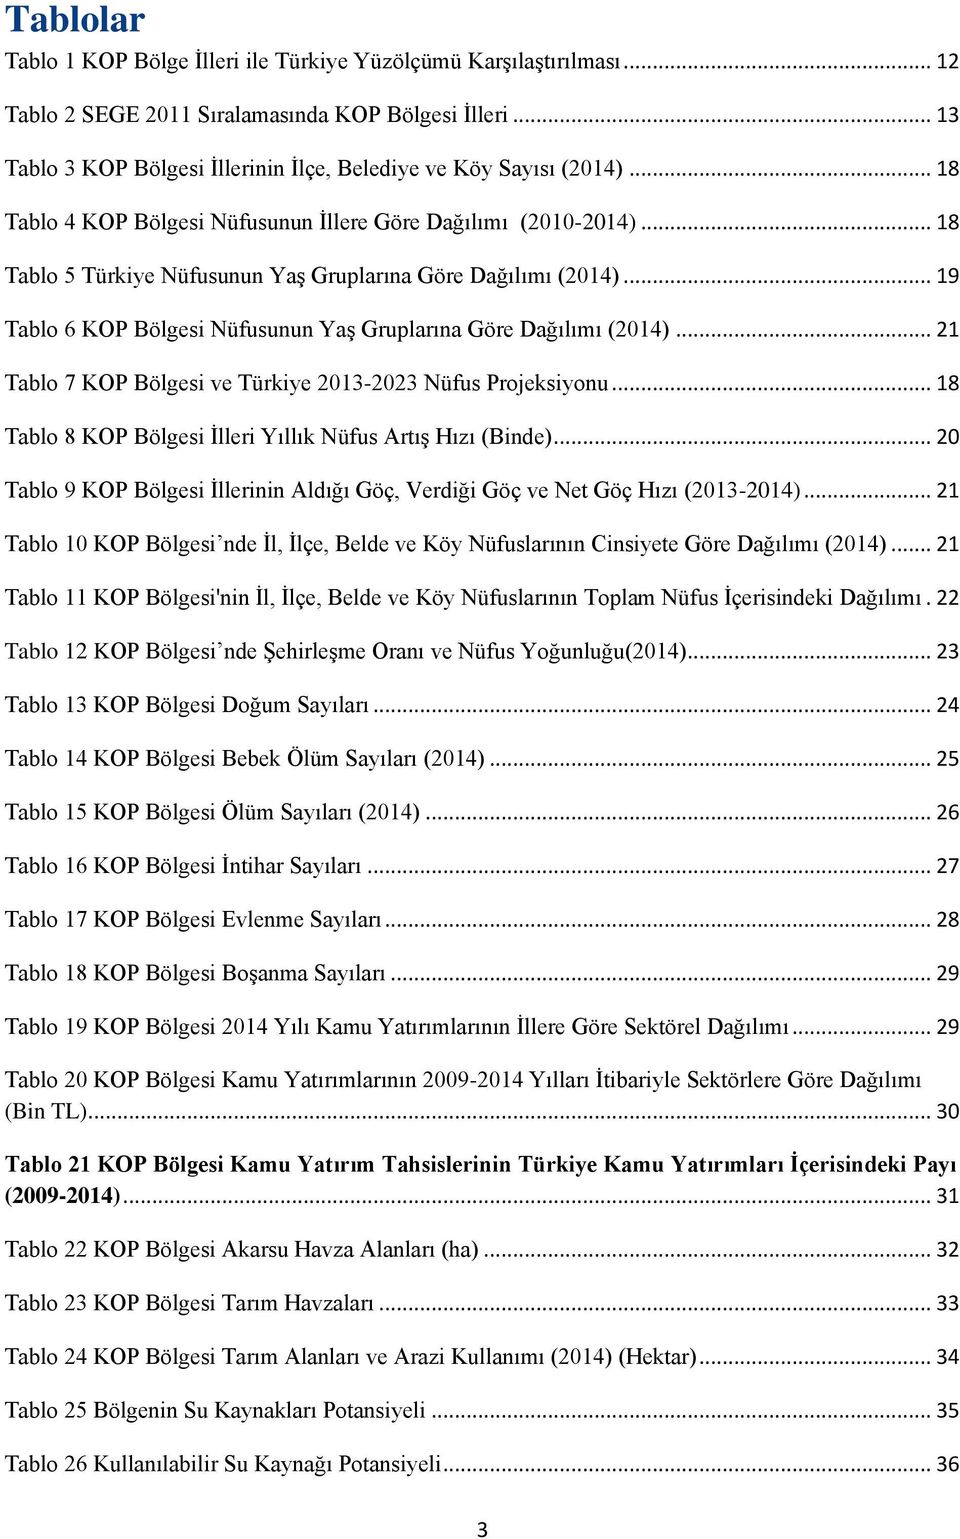 .. 18 Tablo 5 Türkiye Nüfusunun Yaş Gruplarına Göre Dağılımı (2014)... 19 Tablo 6 KOP Bölgesi Nüfusunun Yaş Gruplarına Göre Dağılımı (2014).